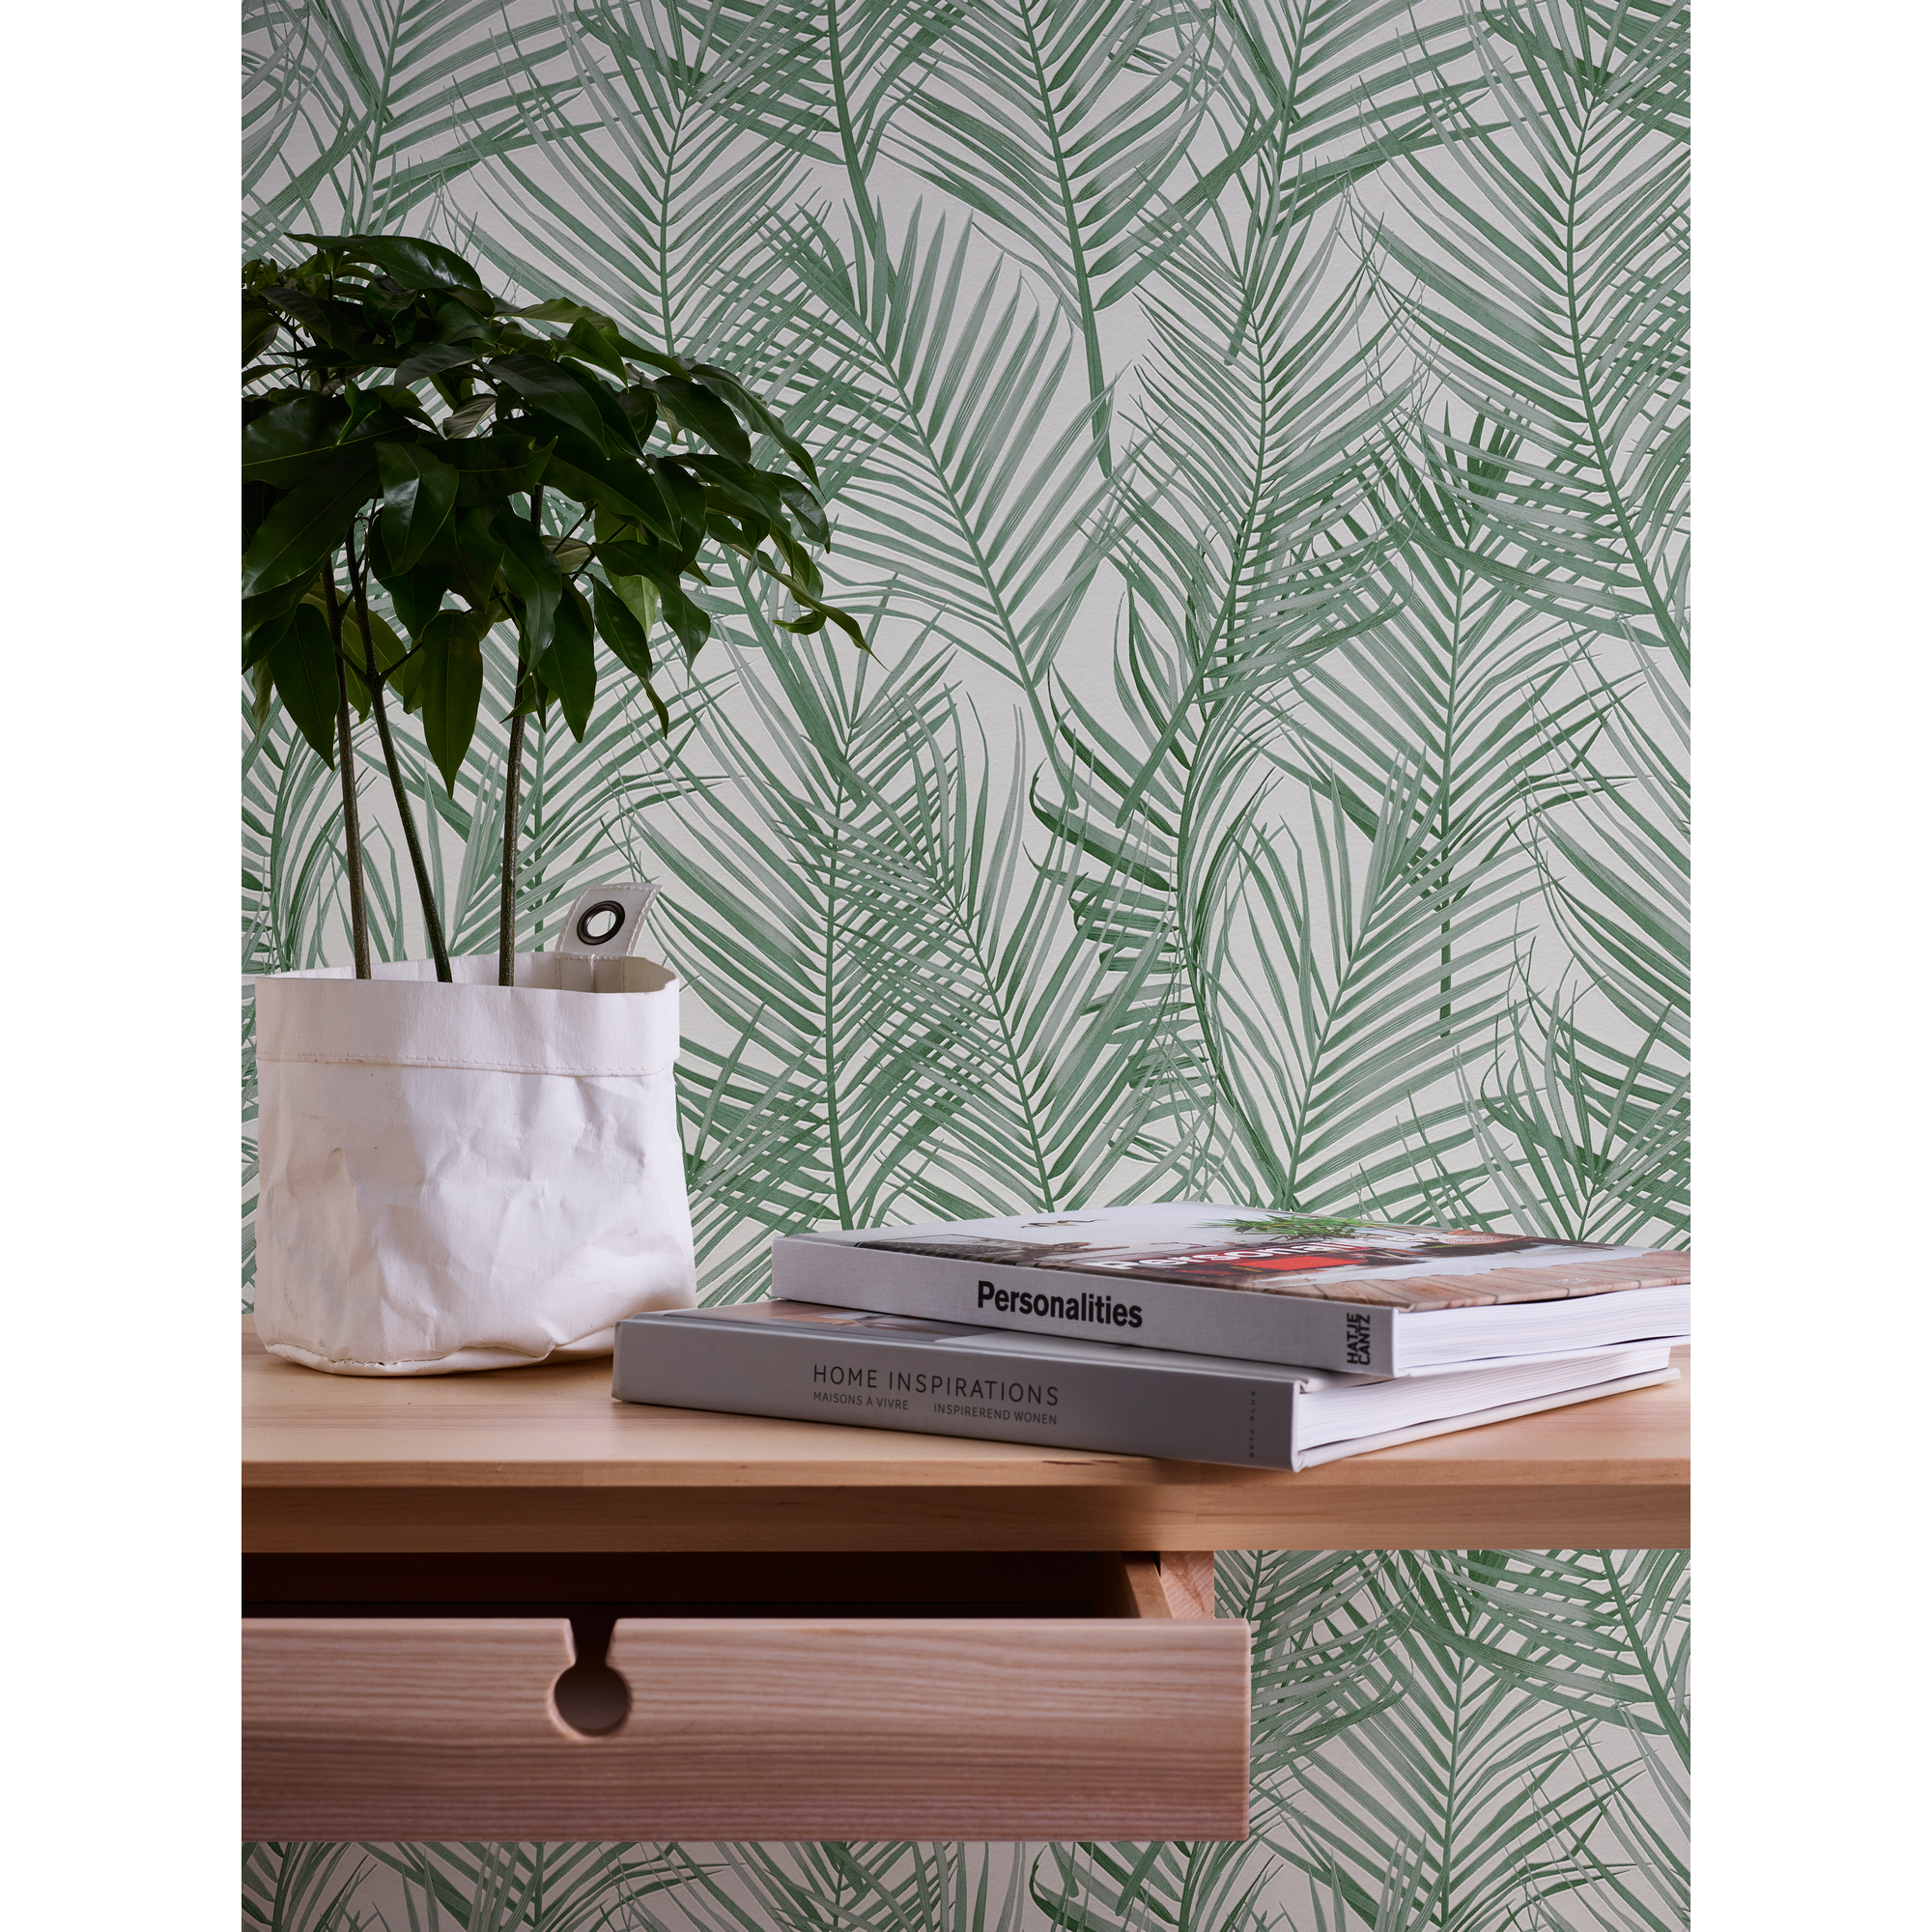 Vliestapete 'Attractive' Palmenblätter grün 10,05 m x 0,53 m + product picture